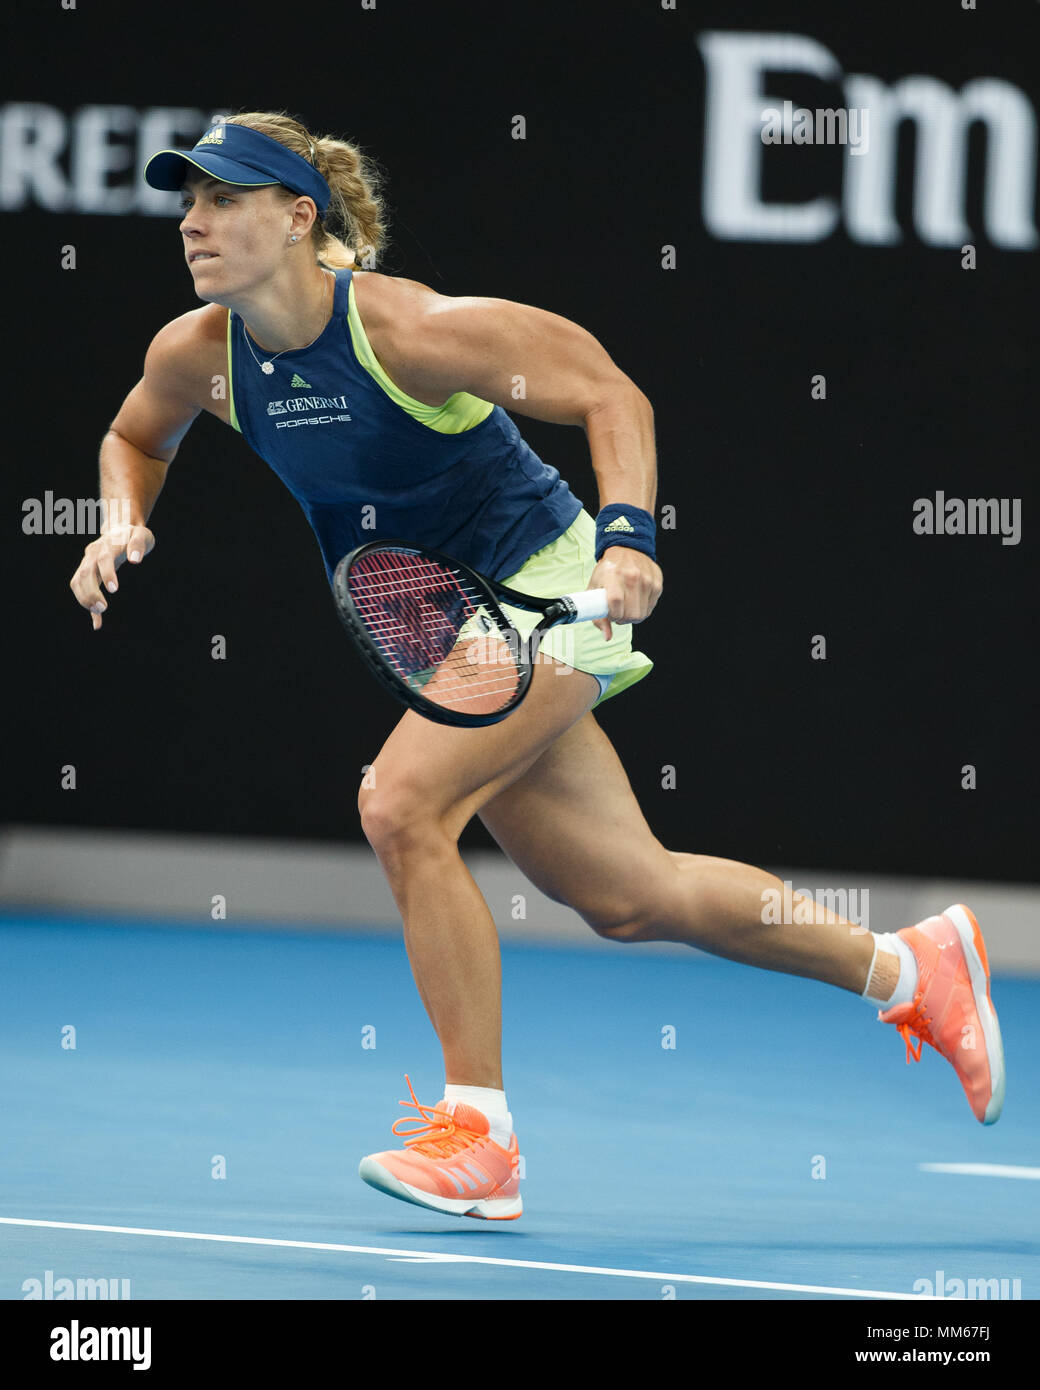 Deutsche Tennisspieler Angelique Kerber vorwärts laufen bei den Australian  Open Tennis Turnier 2018, Melbourne Park, Melbourne, Victoria, Australien  Stockfotografie - Alamy